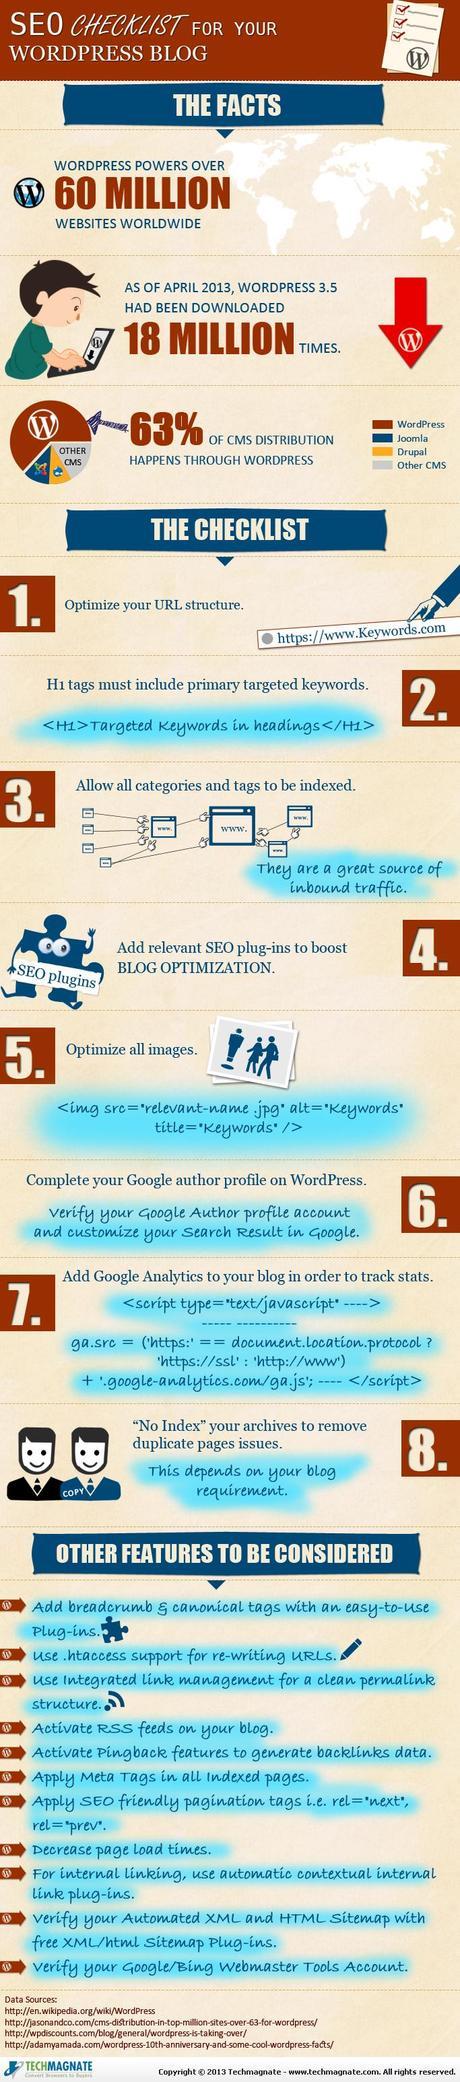 Infographie seo checklist for your wordpress blog #Dossier #WordPress : la #checklist ultime pour avoir un #référencement en béton